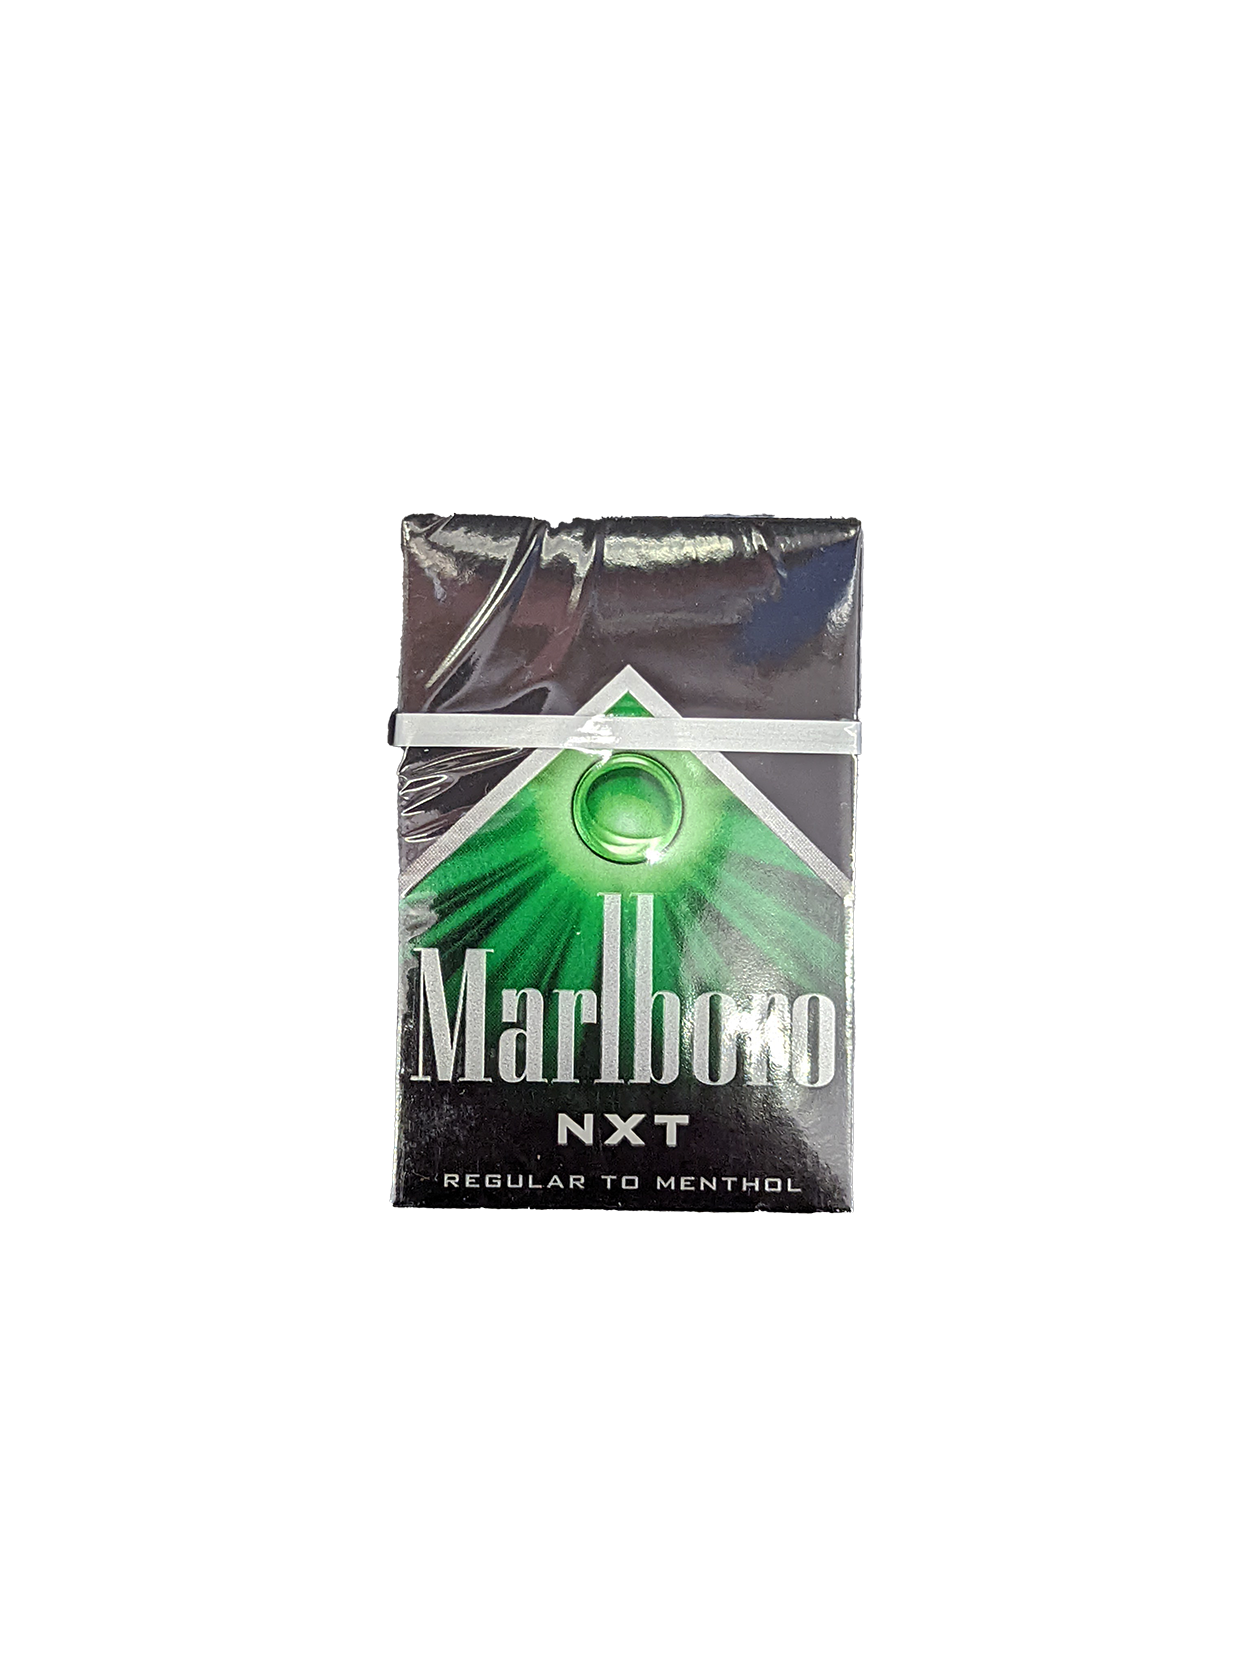 what are marlboro black cigarettes